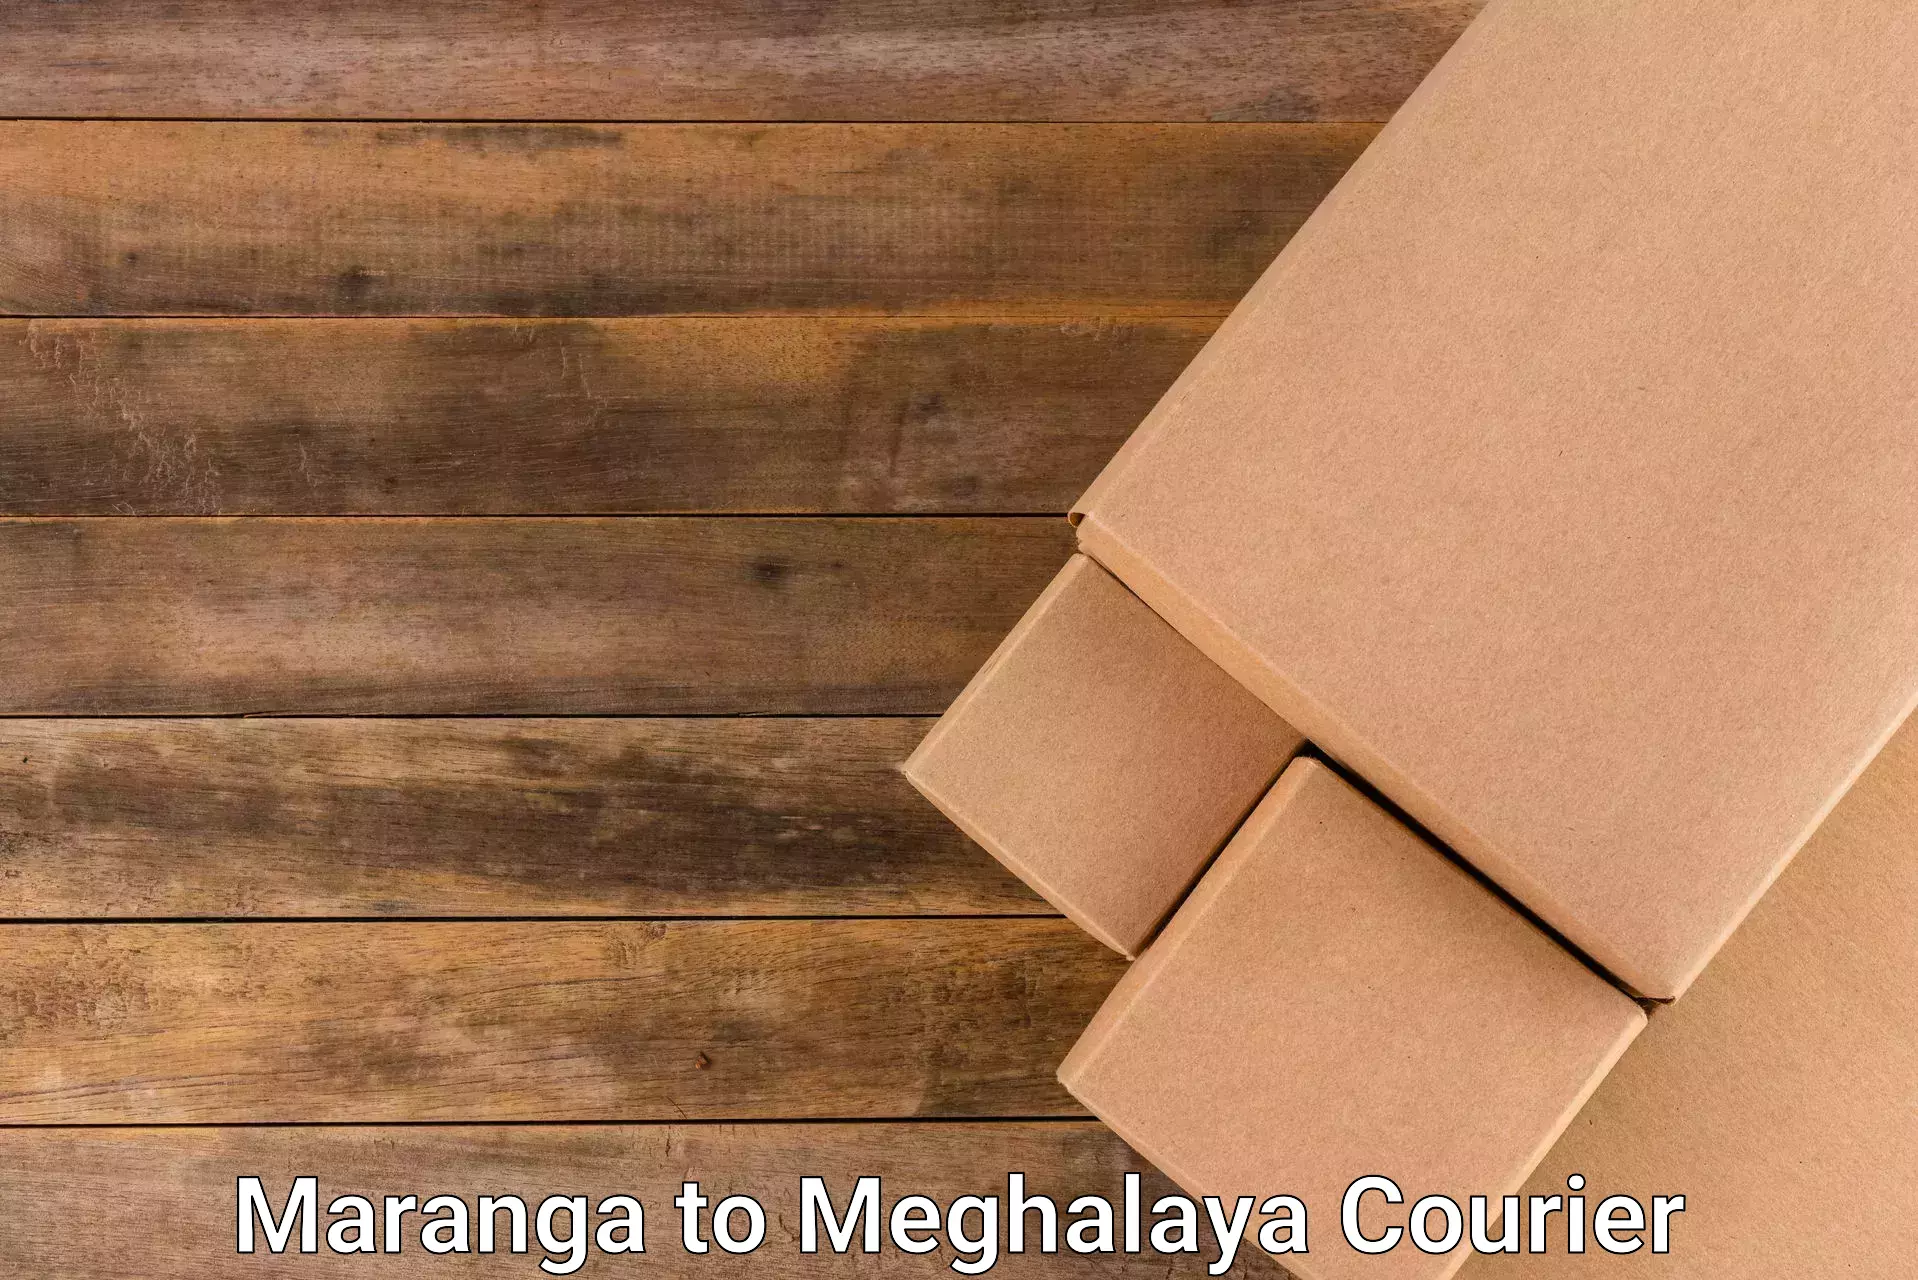 Express package handling Maranga to Garobadha